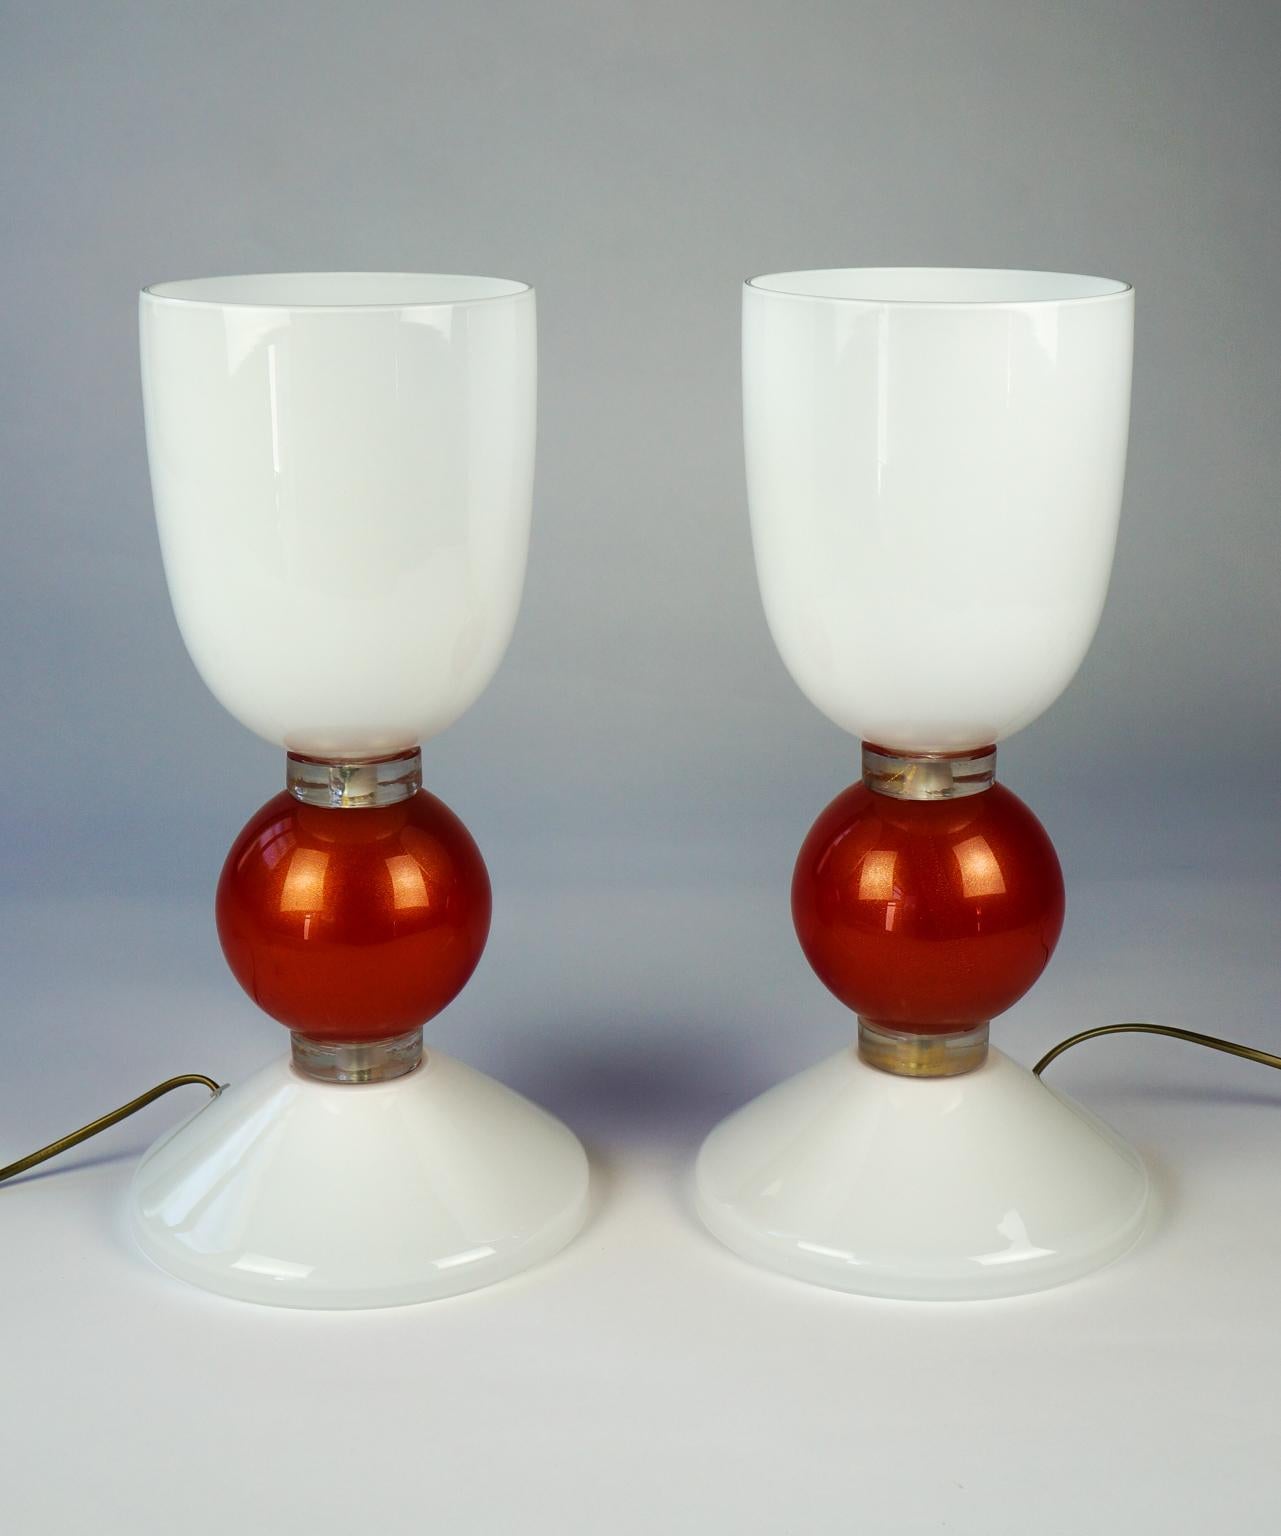 Conçue en 1984, cette lampe est composée d'une base blanc laiteux, qui rappelle la couleur de la tasse. On y insère une ampoule qui diffuse une lumière très douce grâce à l'opacité du verre de Murano blanc. Les deux pièces sont reliées par une